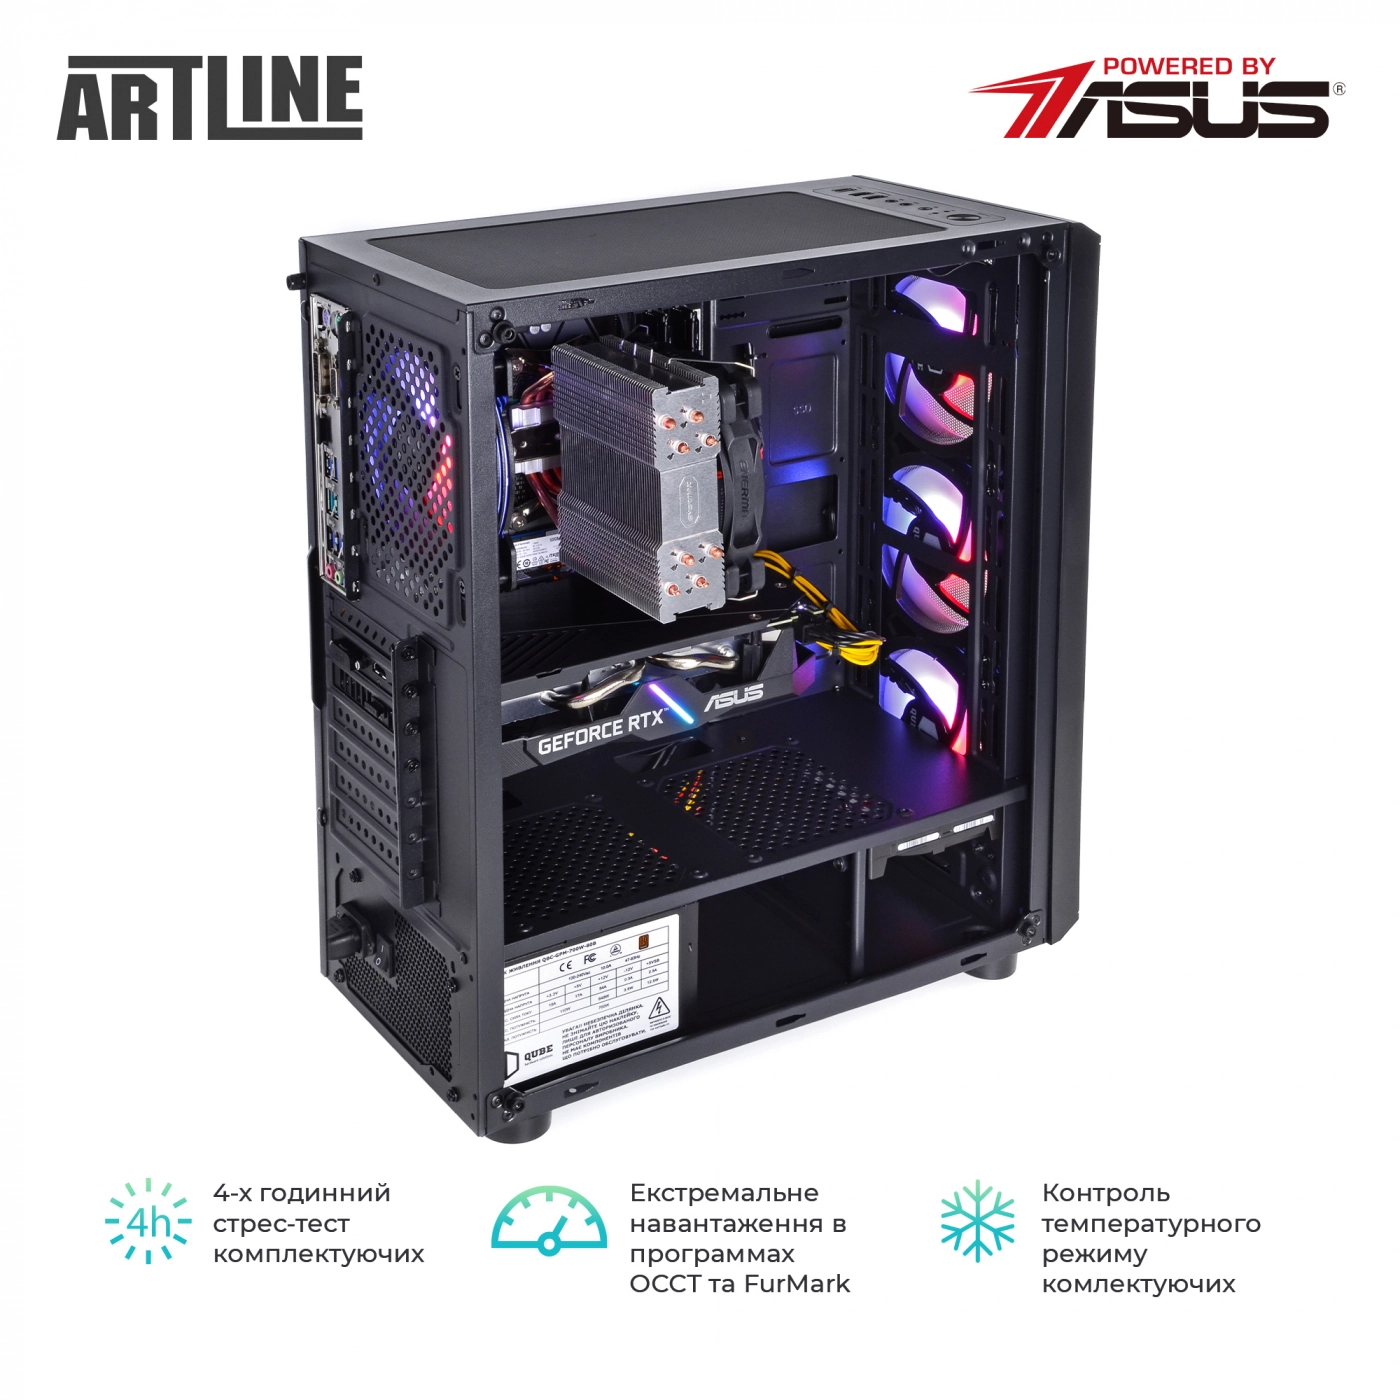 Купить Компьютер ARTLINE Gaming X68v17 - фото 10